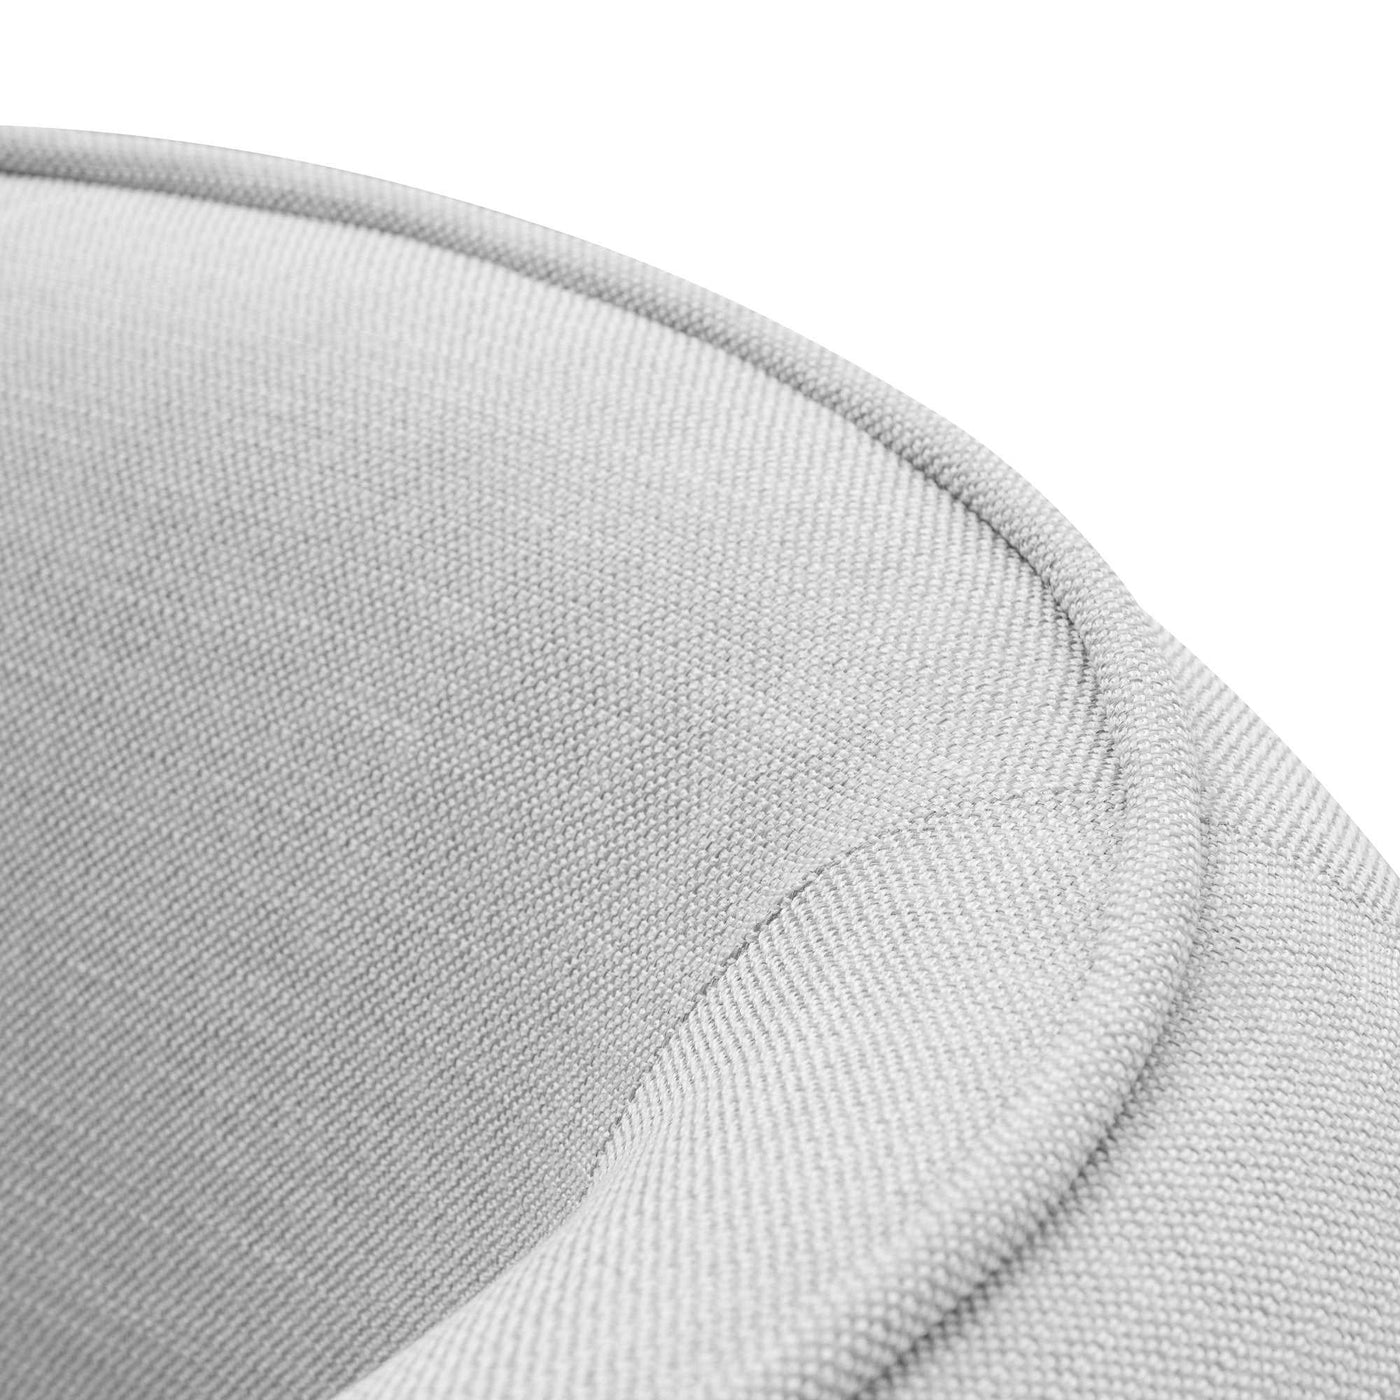 2 Seater Fabric Sofa - Light Texture Grey